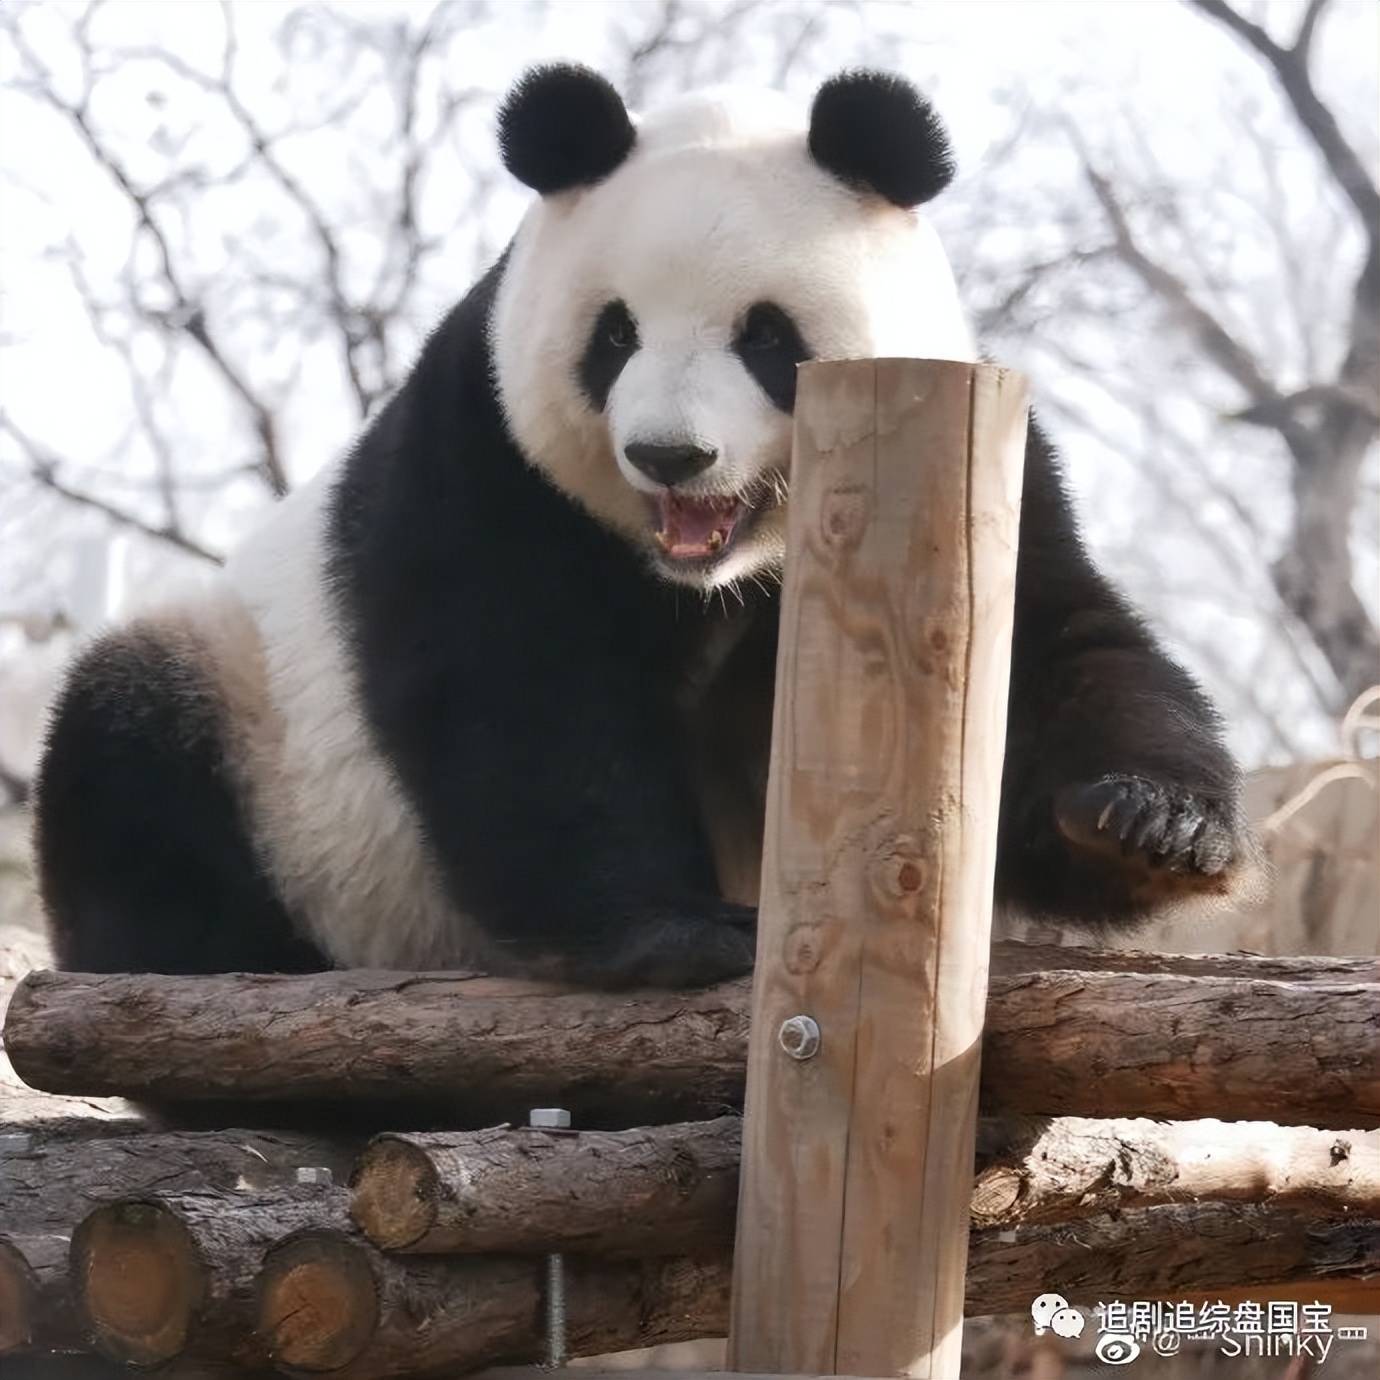 熊猫创意昵称图片